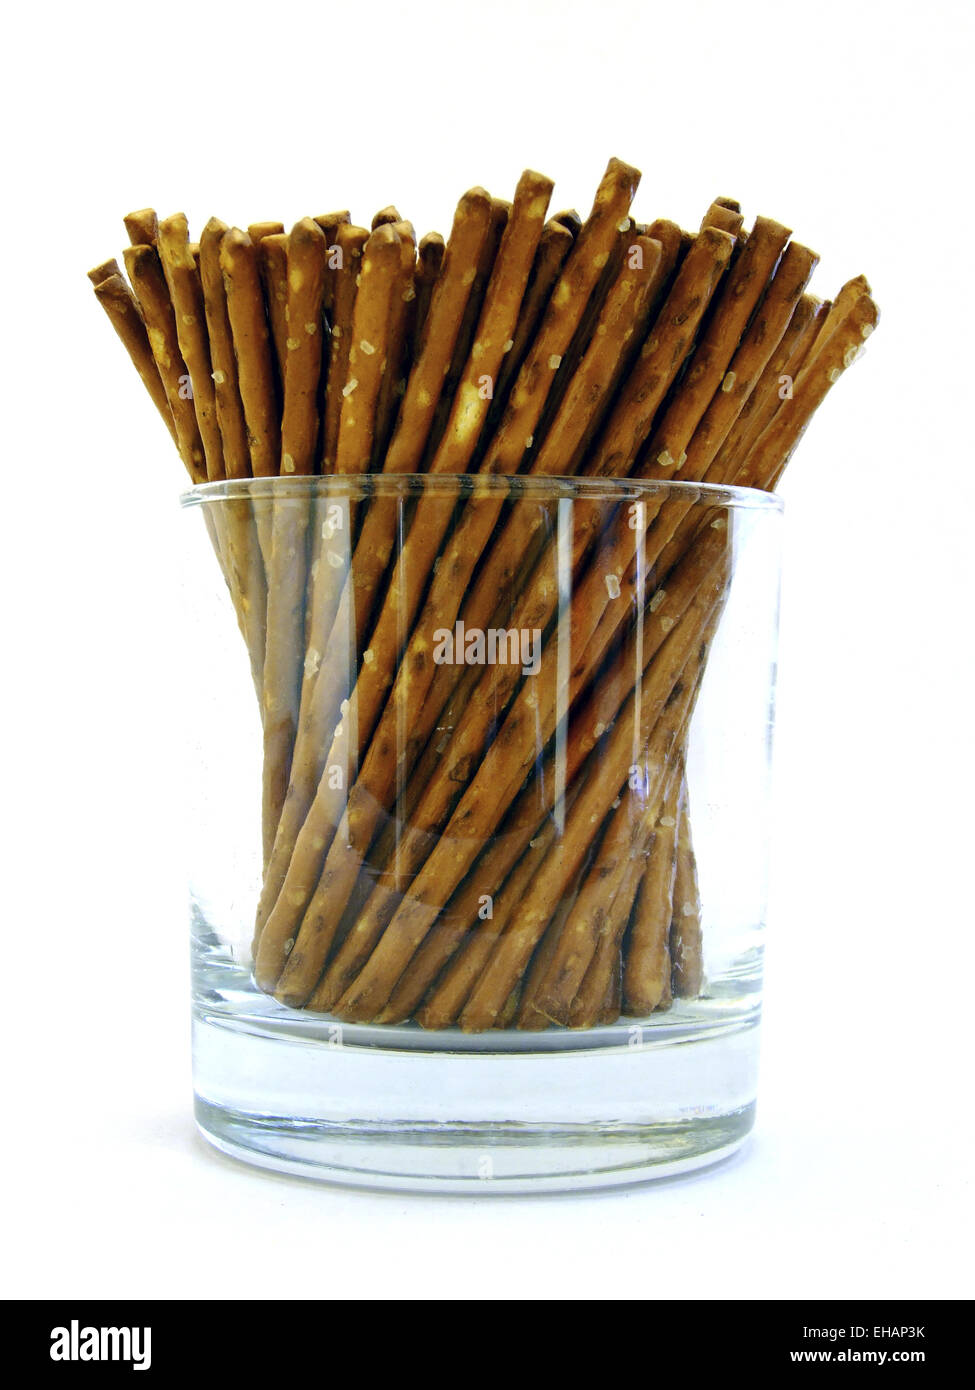 Salzstangen / pretzel sticks Stock Photo